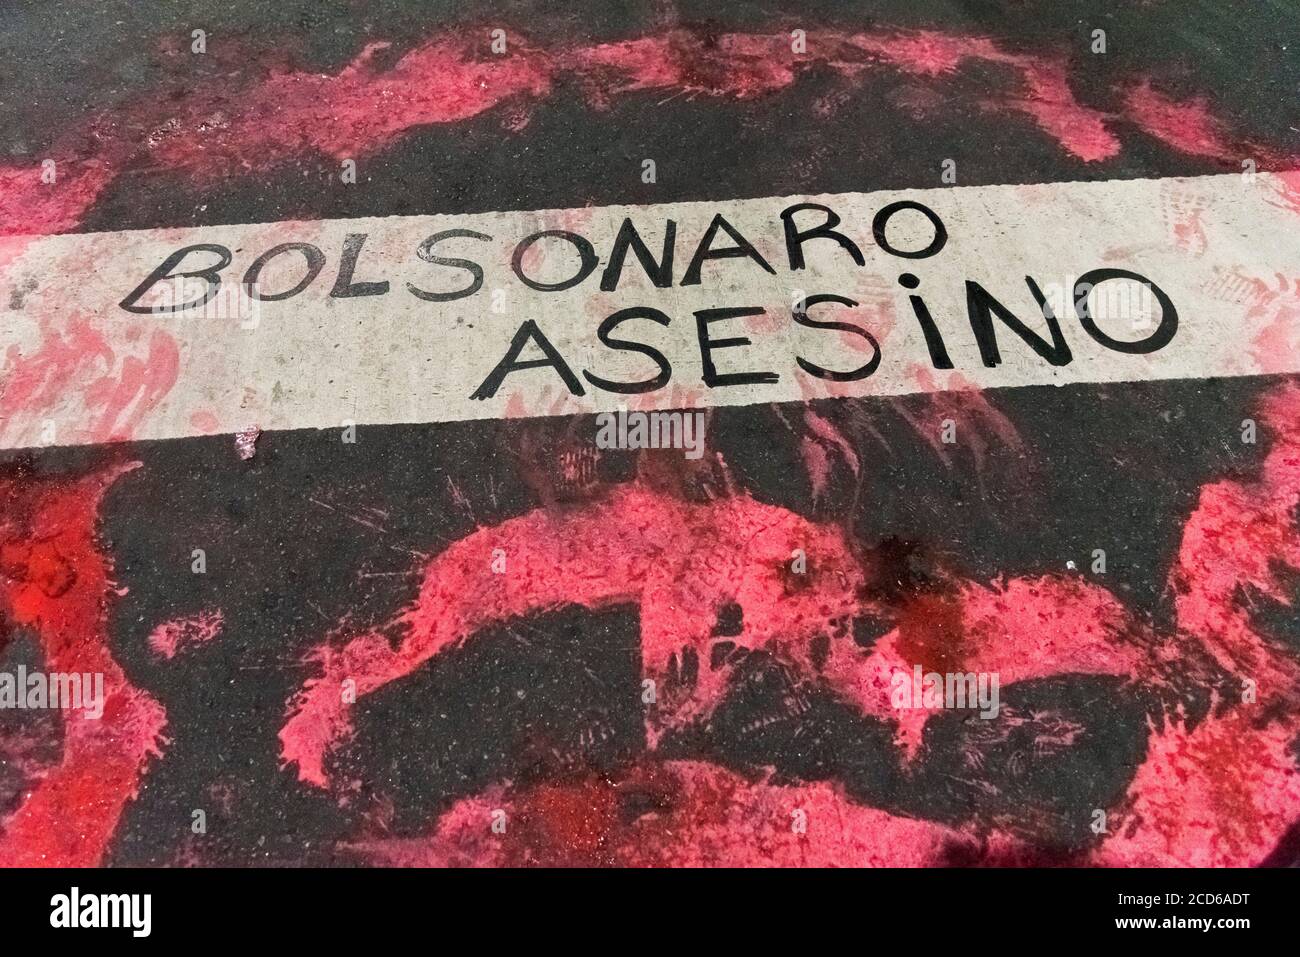 CABA, Buenos Aires / Argentinien; 23. Aug 2019: Text auf der Straße gemalt: Bolsonaro, Mörder. Protest für den Schutz des Amazonas und gegen Br Stockfoto